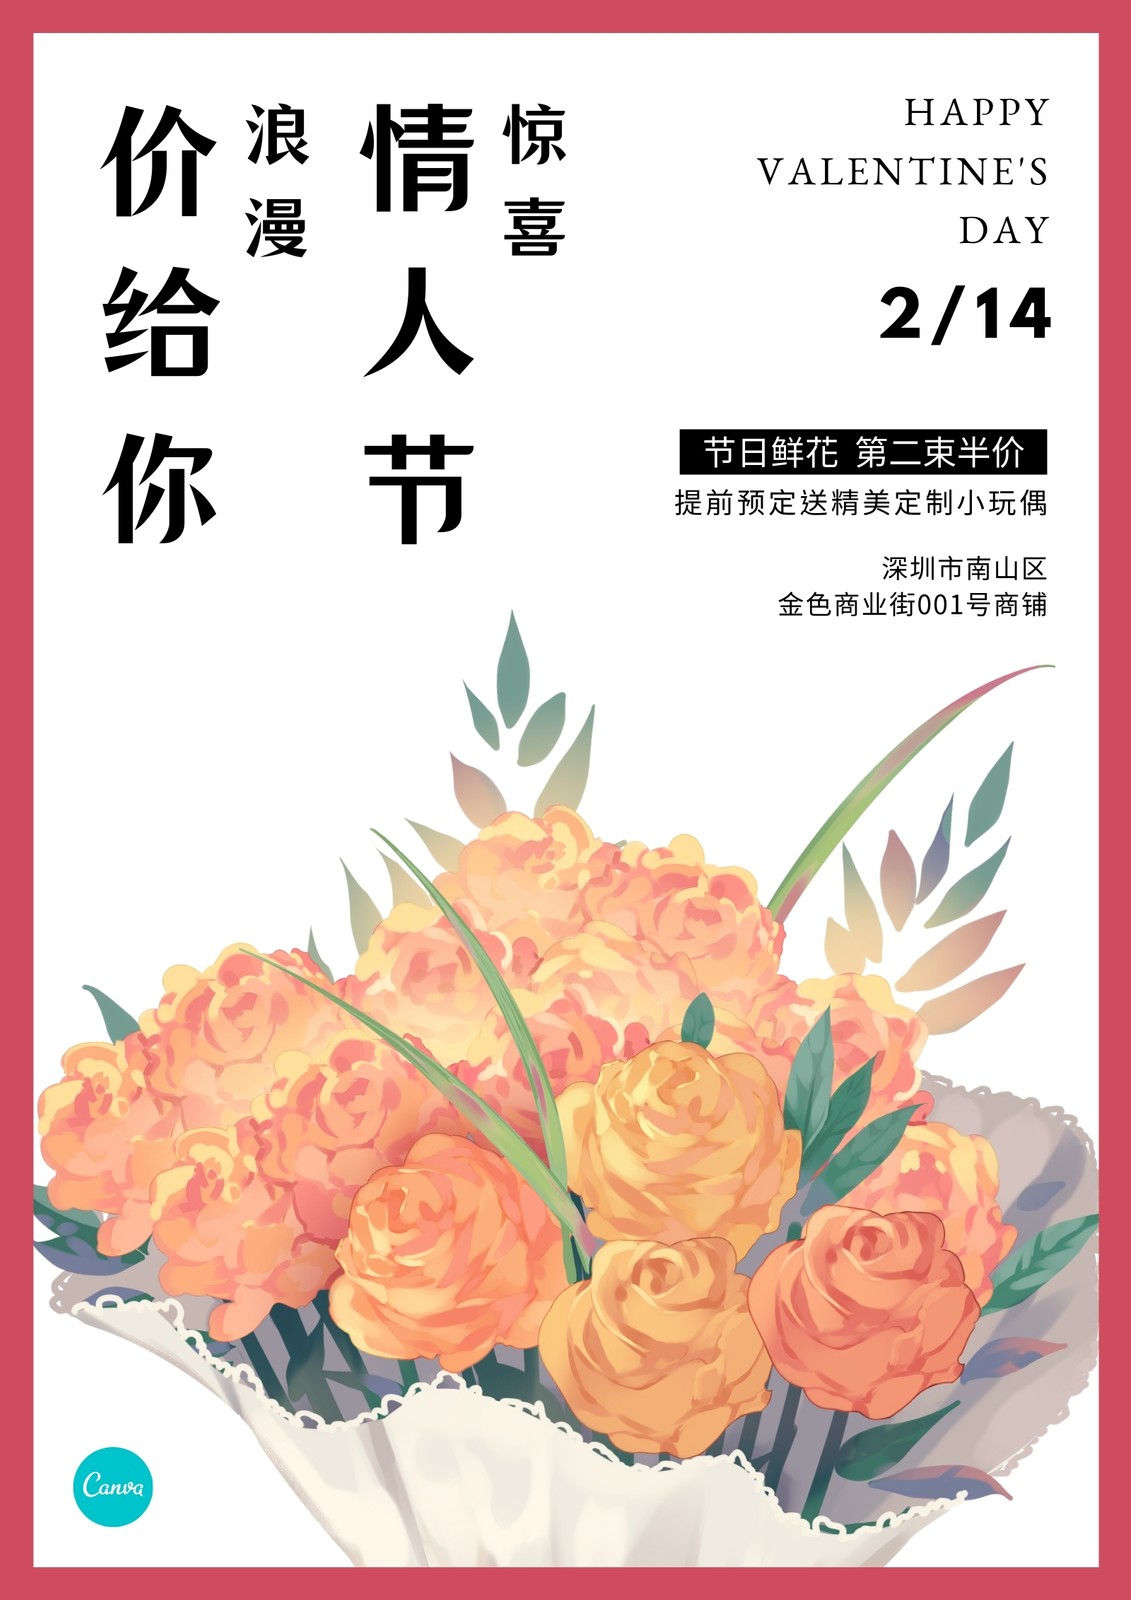 橙白色玫瑰花束水彩现代情人节节日促销中文海报